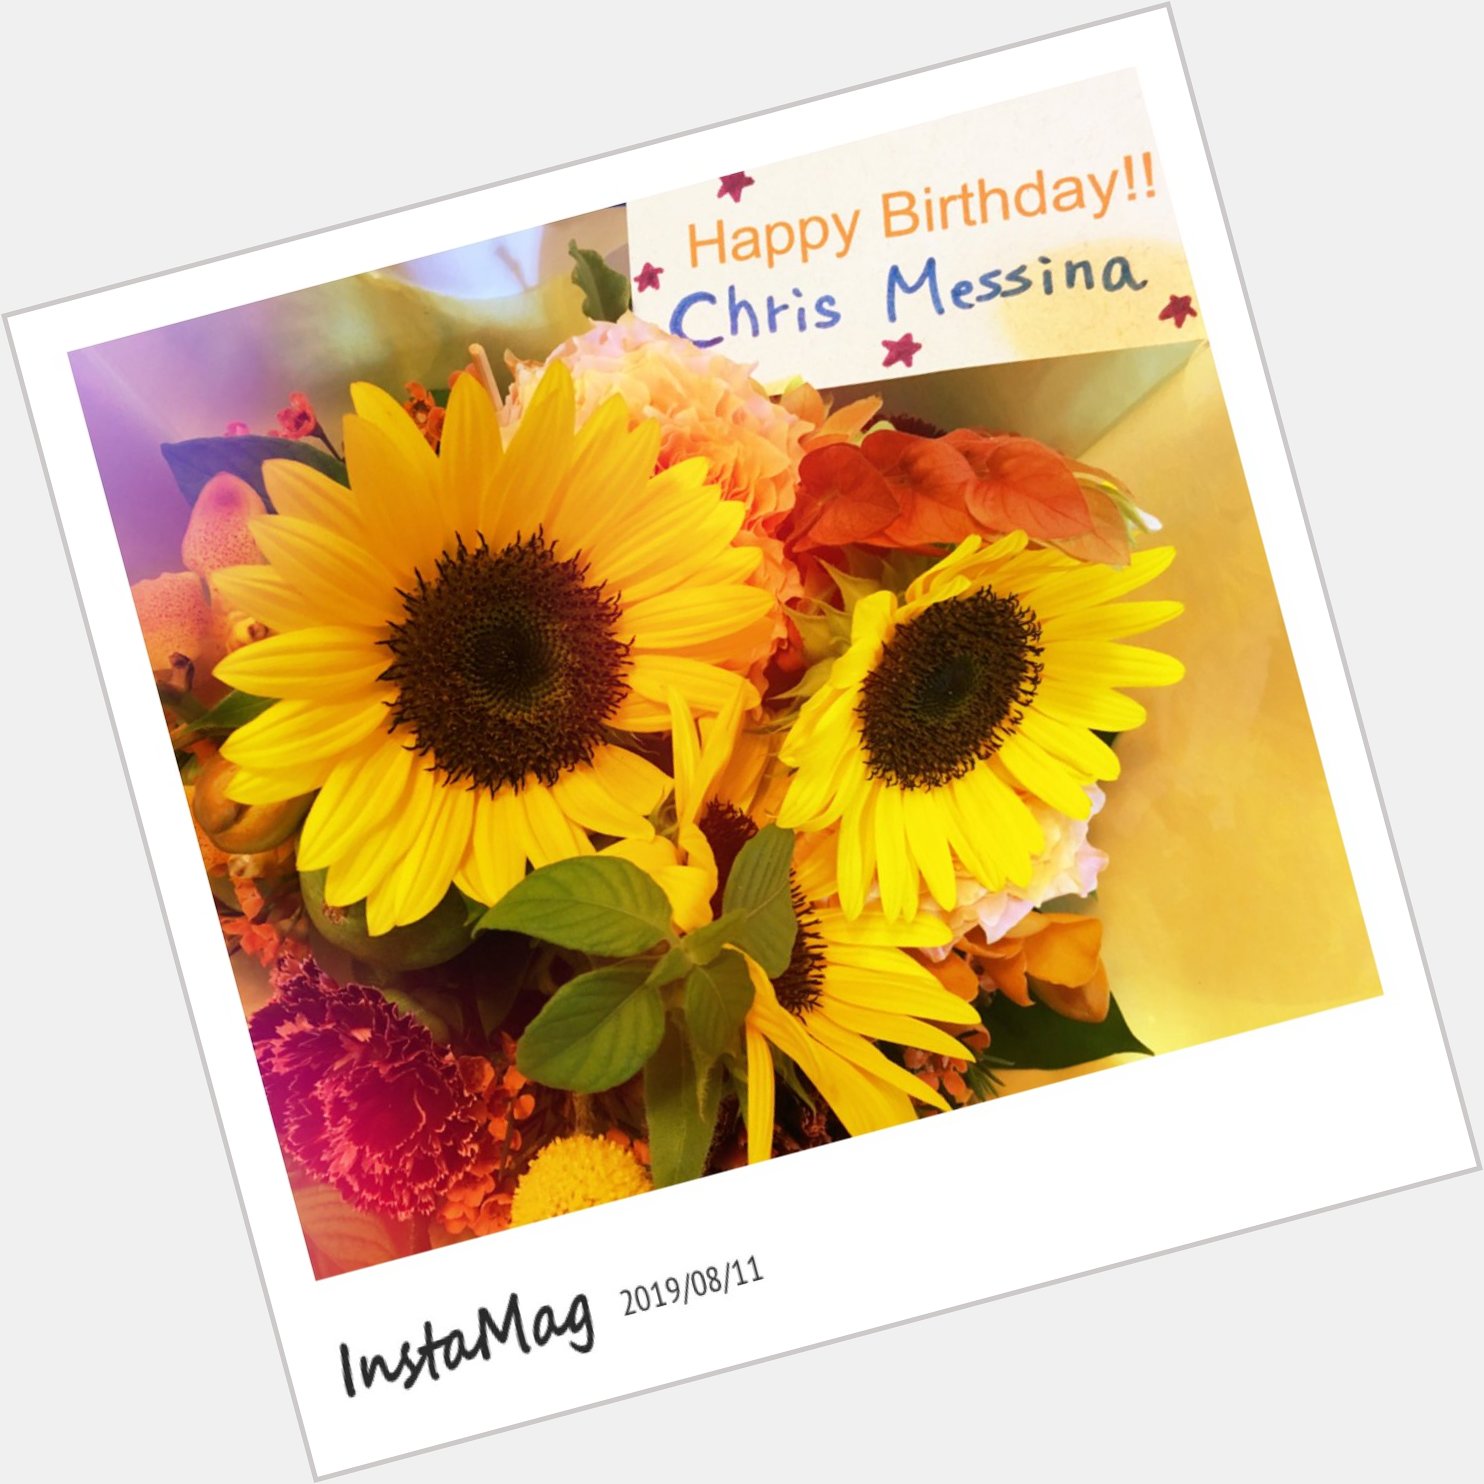 Happy Birthday Chris Messina                    Amazing actor    